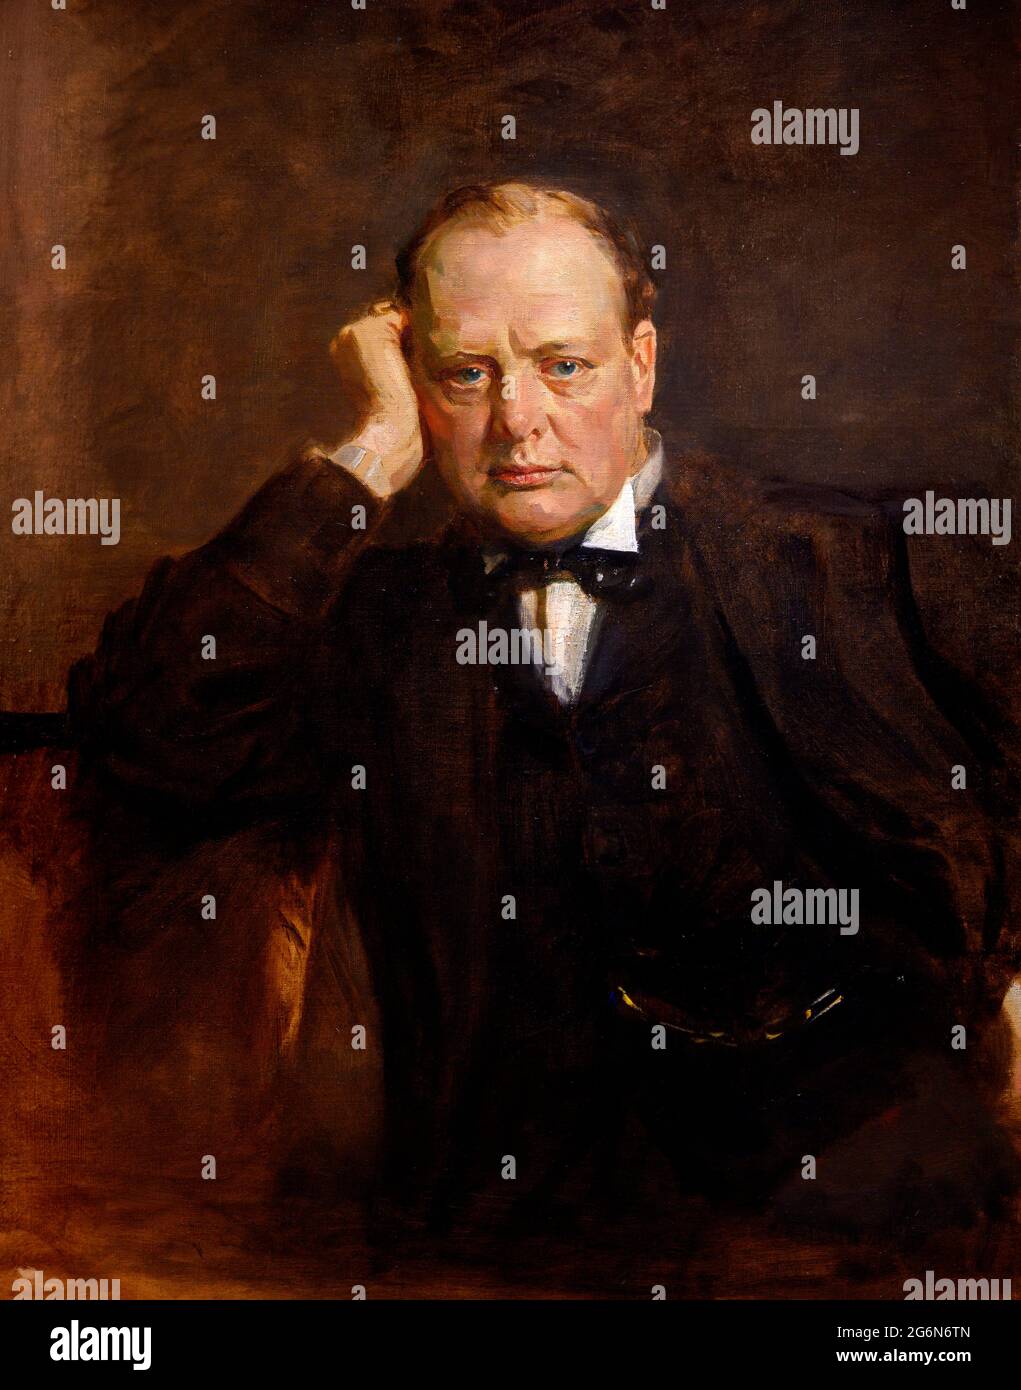 Winston Churchill. Porträtmalerei des britischen Premierministers Sir Winston Churchill (1874-1965) von Sir James Guthrie (1859-1930), Öl auf Leinwand, ca. 1919-21 Stockfoto